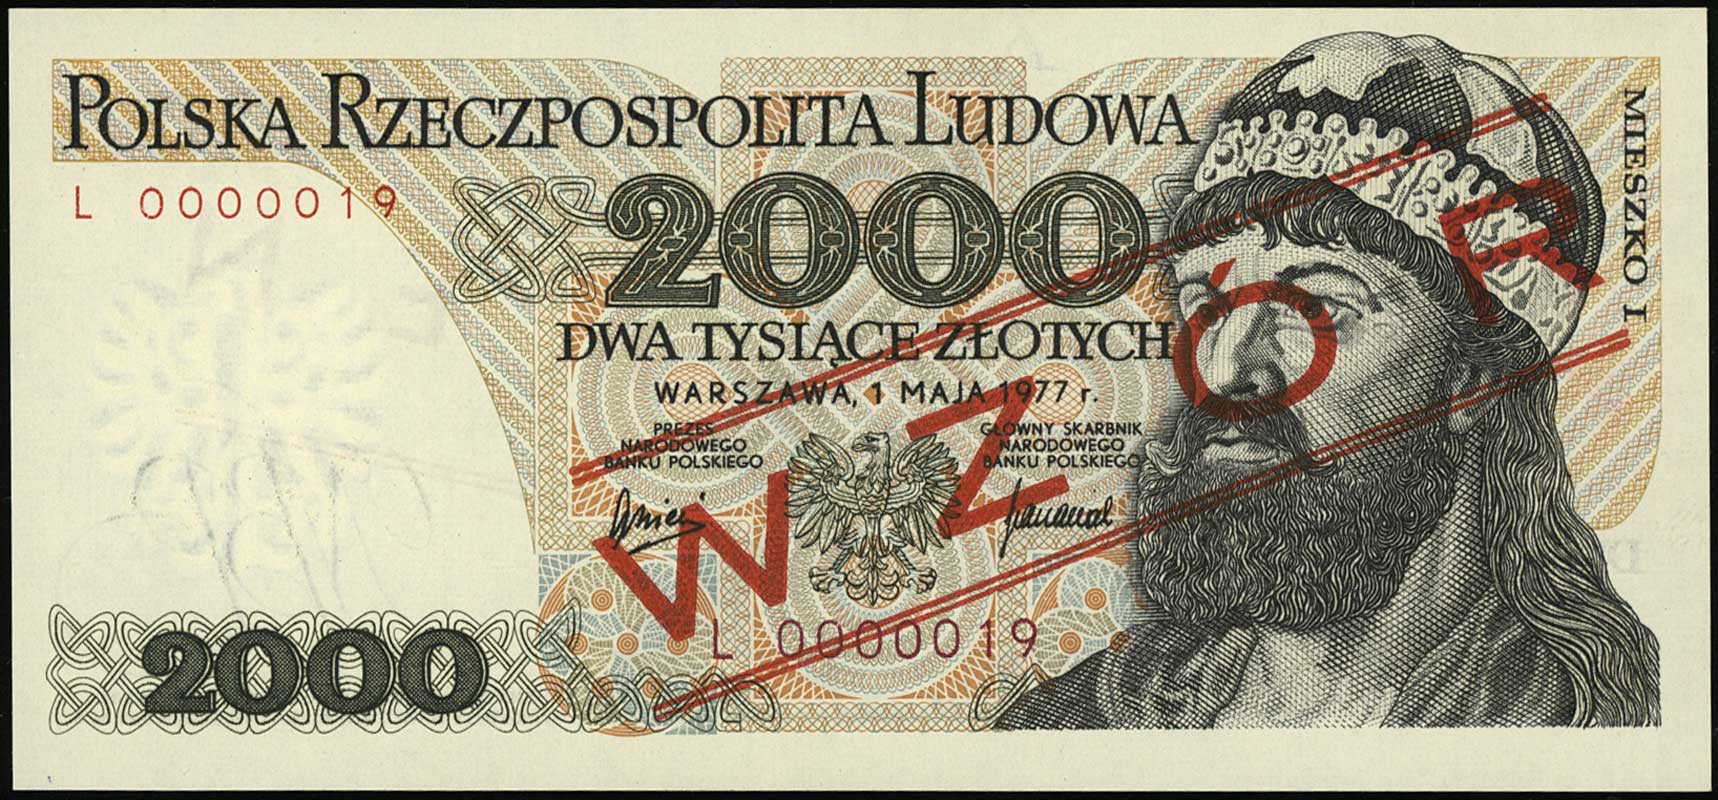 2.000 złotych 1.05.1977, seria L, numeracja 0000019, Miłczak 149 (nie notuje takiego wzoru), tzw. wzór Jaroszewicza*